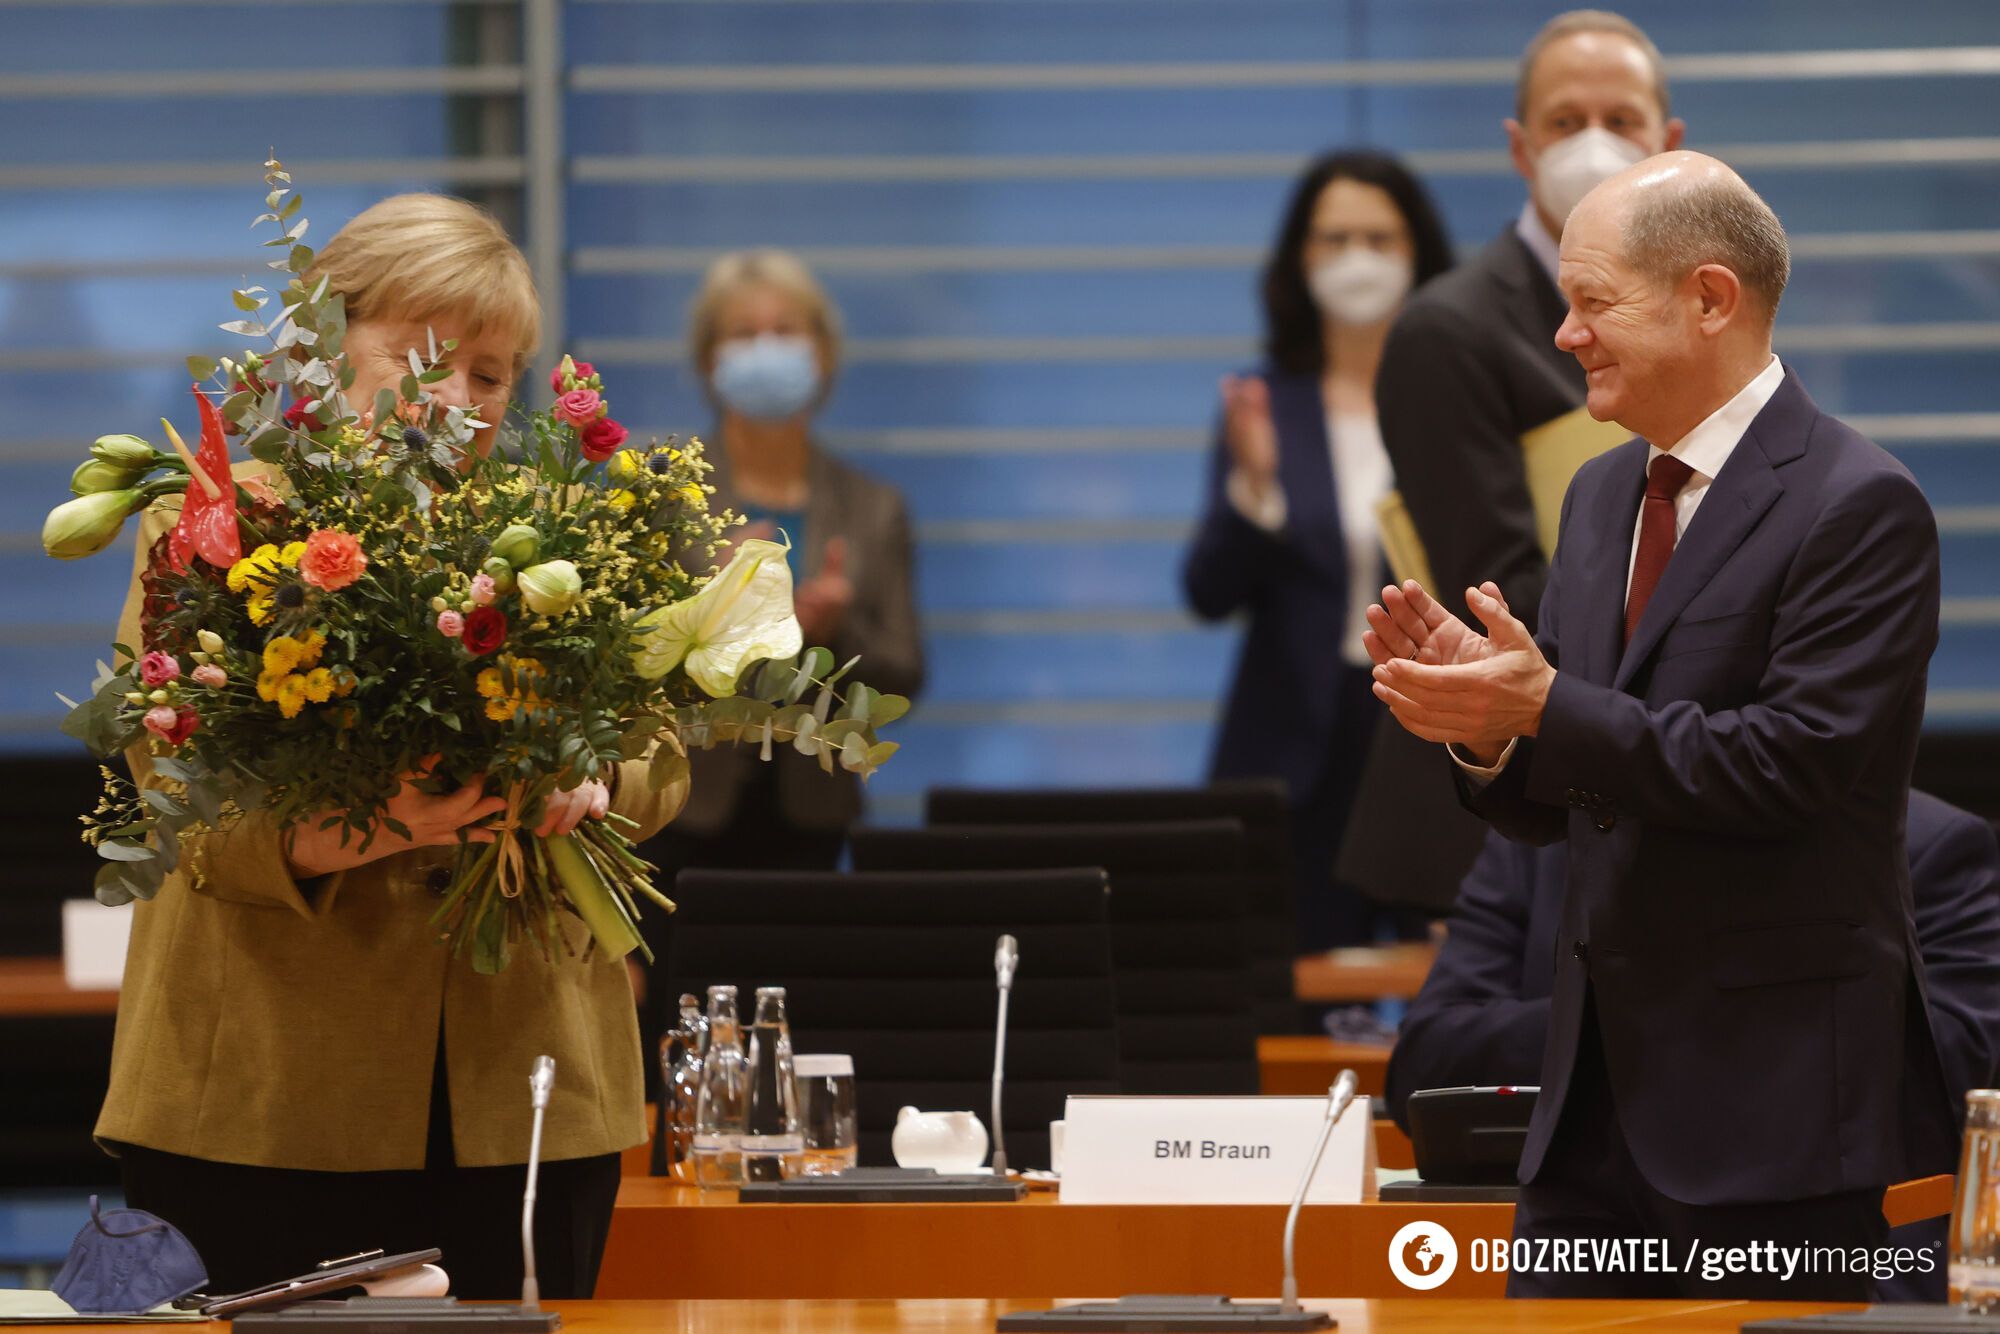 Також Шольц подарував Меркель букет квітів.